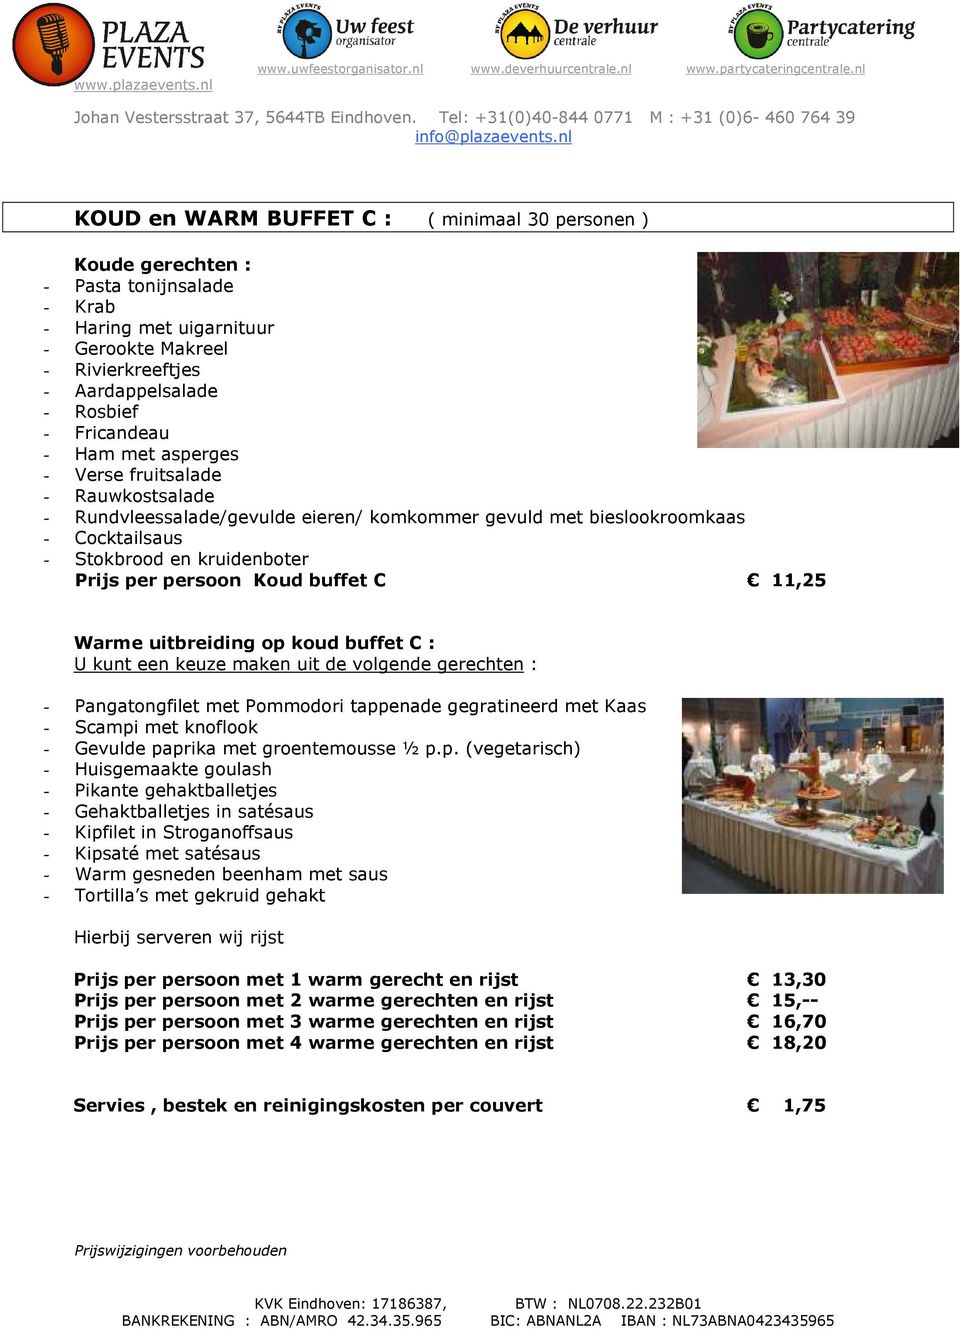 Warme uitbreiding op koud buffet C : Prijs per persoon met 1 warm gerecht en rijst 13,30 Prijs per persoon met 2 warme